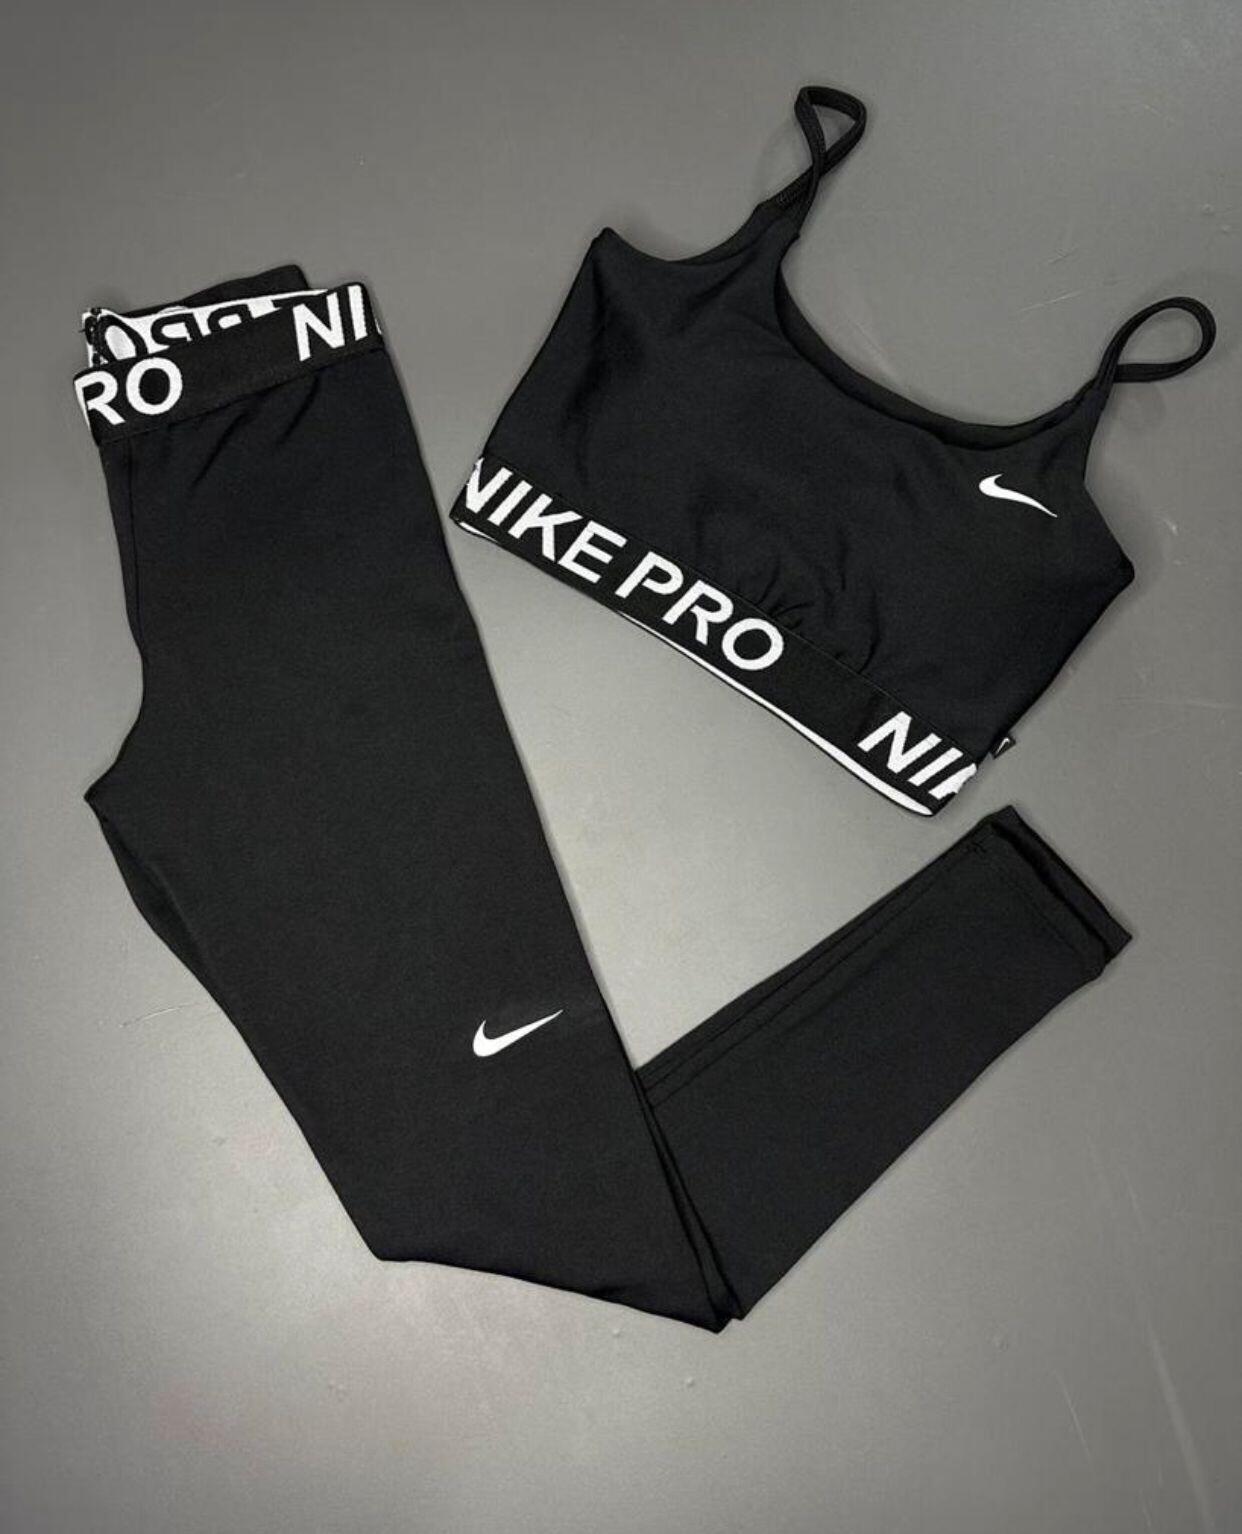 Comprar Conjunto Fitness Nike Pro Alcinha - R$119,99 - Lindo Imports